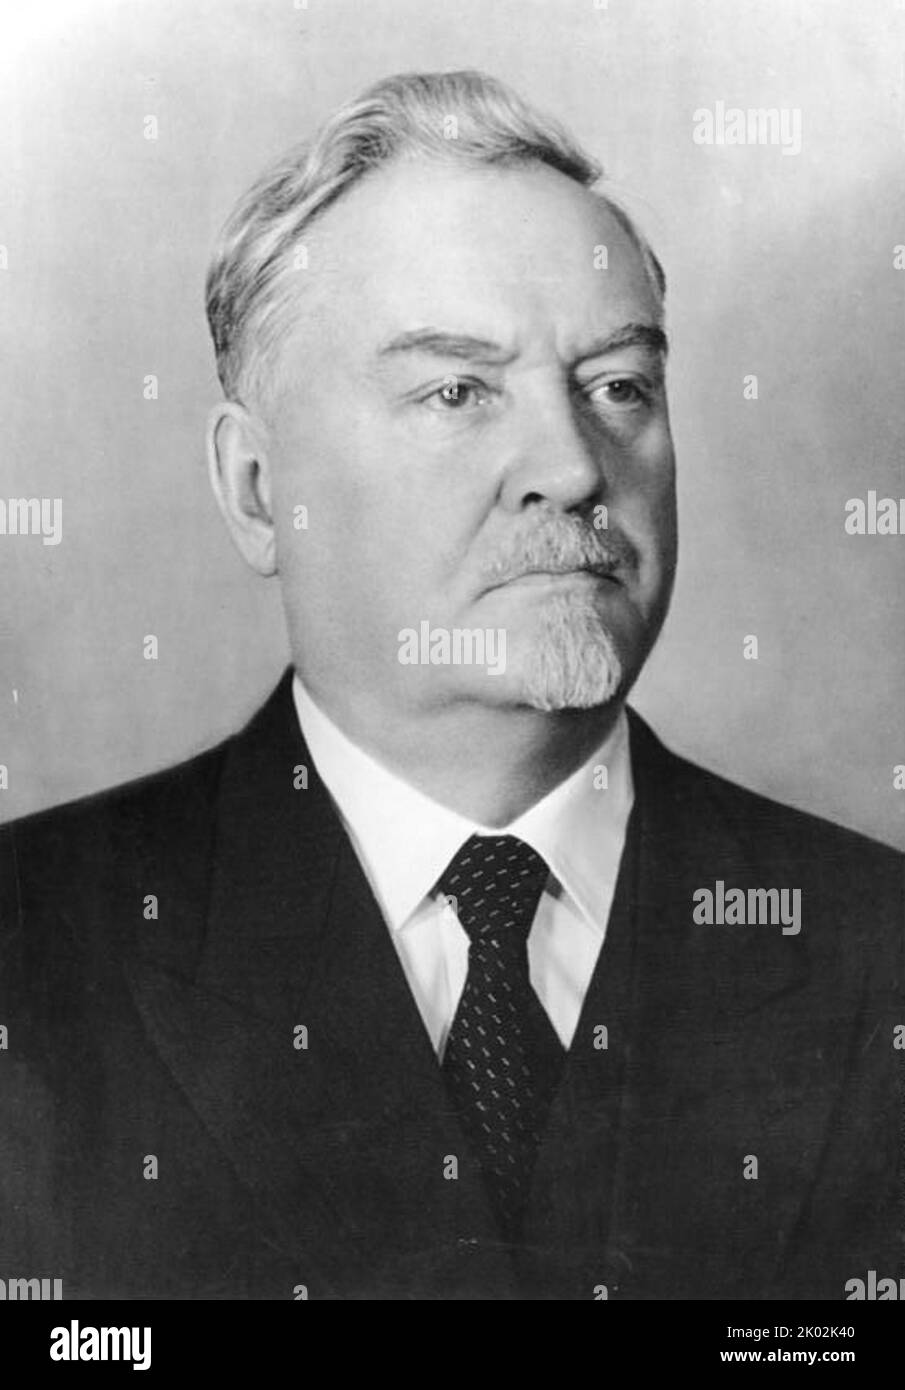 Nikolai Alexandrowitsch Bulganin (1895 - 1975) Sowjetischer Politiker, der unter Nikita Chruschtschow als Verteidigungsminister (1953-1955) und Premierminister der Sowjetunion (1955-1958) diente, nach dem Dienst in der Roten Armee und als Verteidigungsminister unter Joseph Stalin. Stockfoto